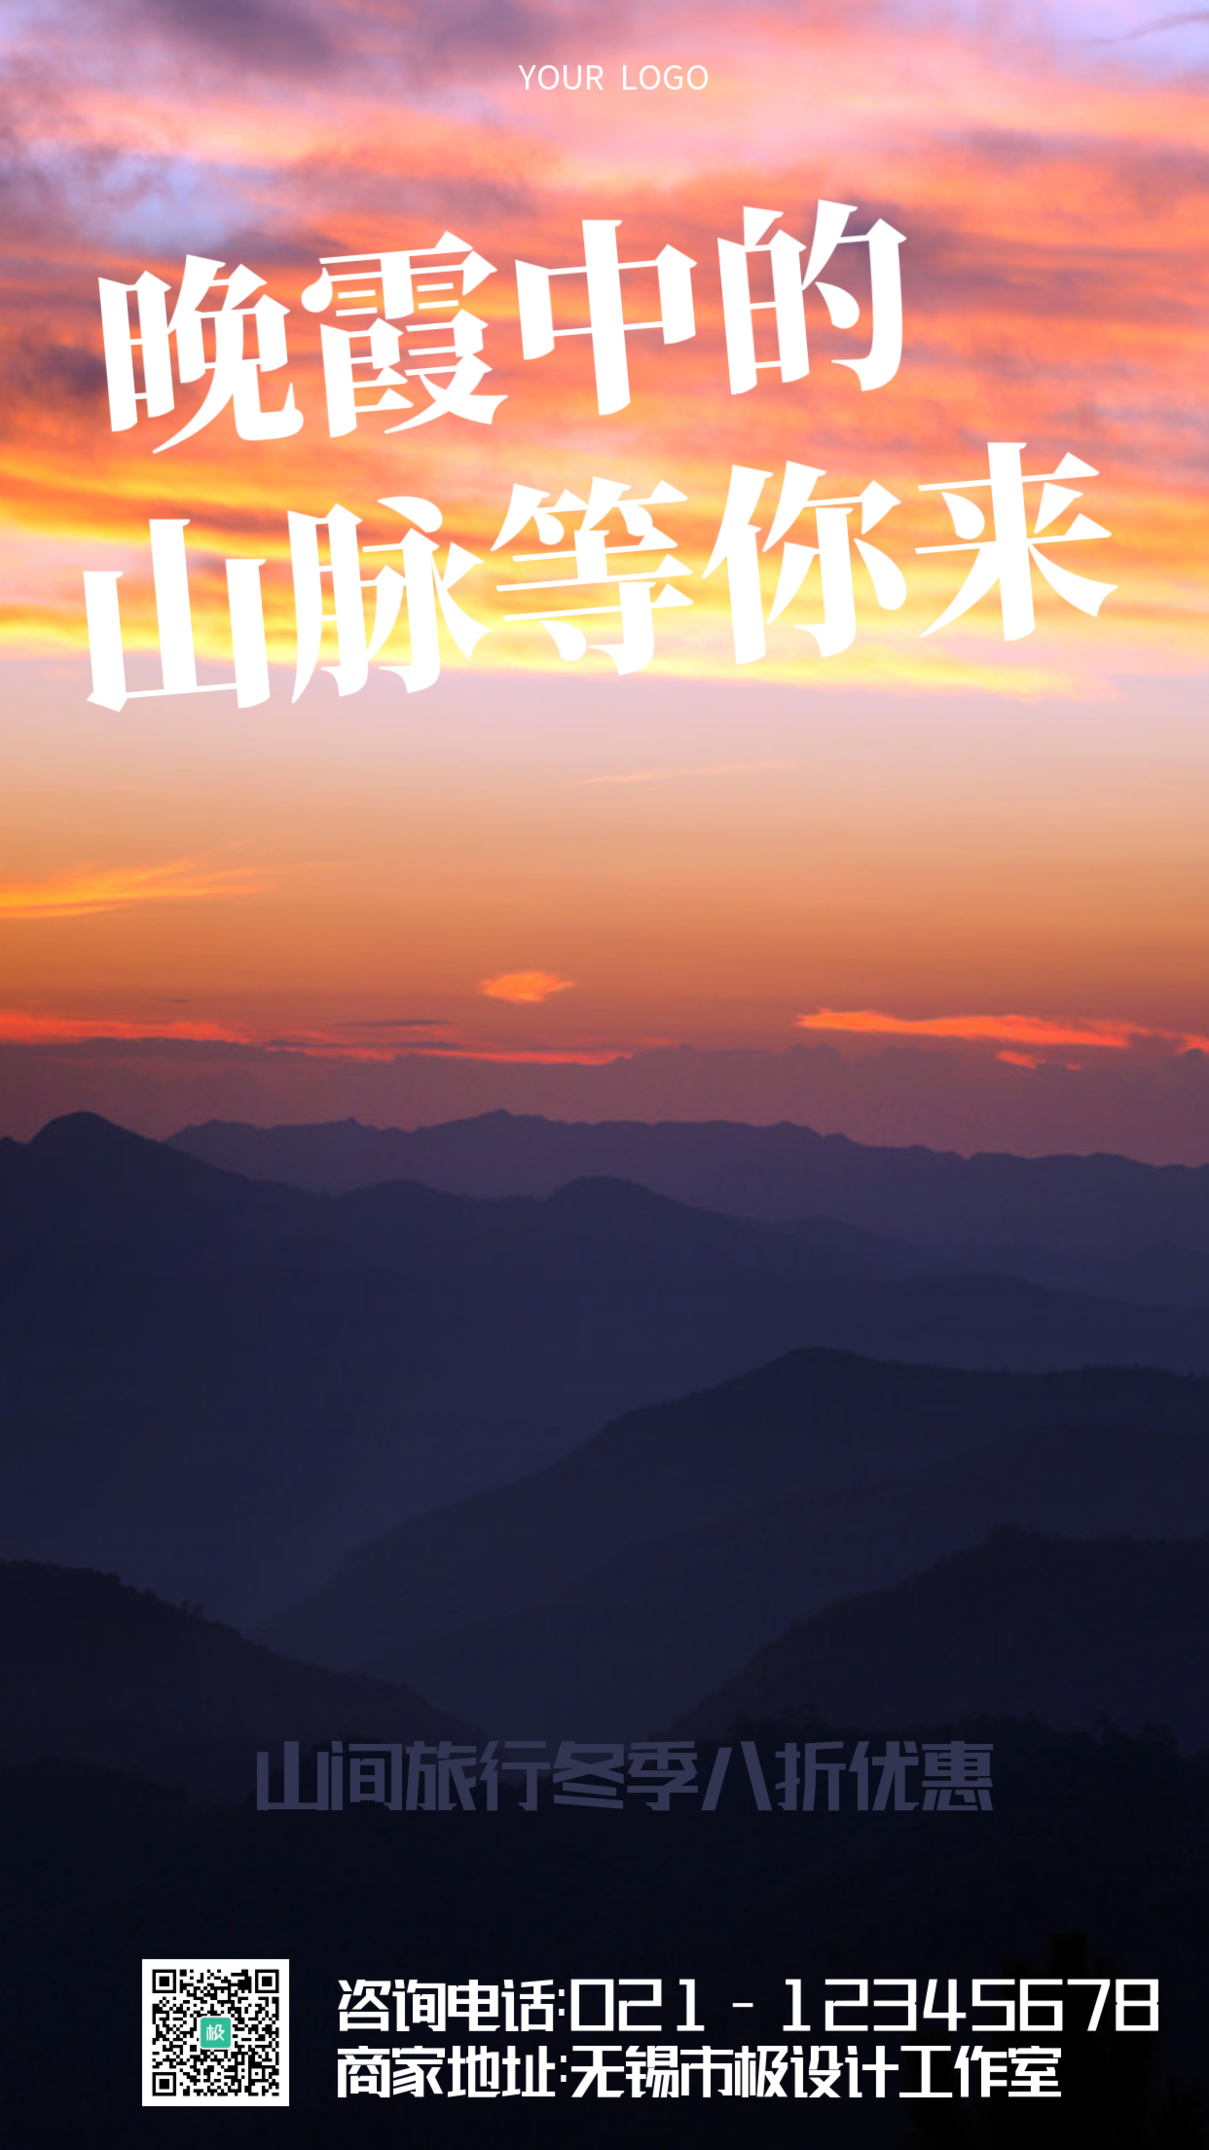 简约晚霞中的山脉旅行宣传手机海报